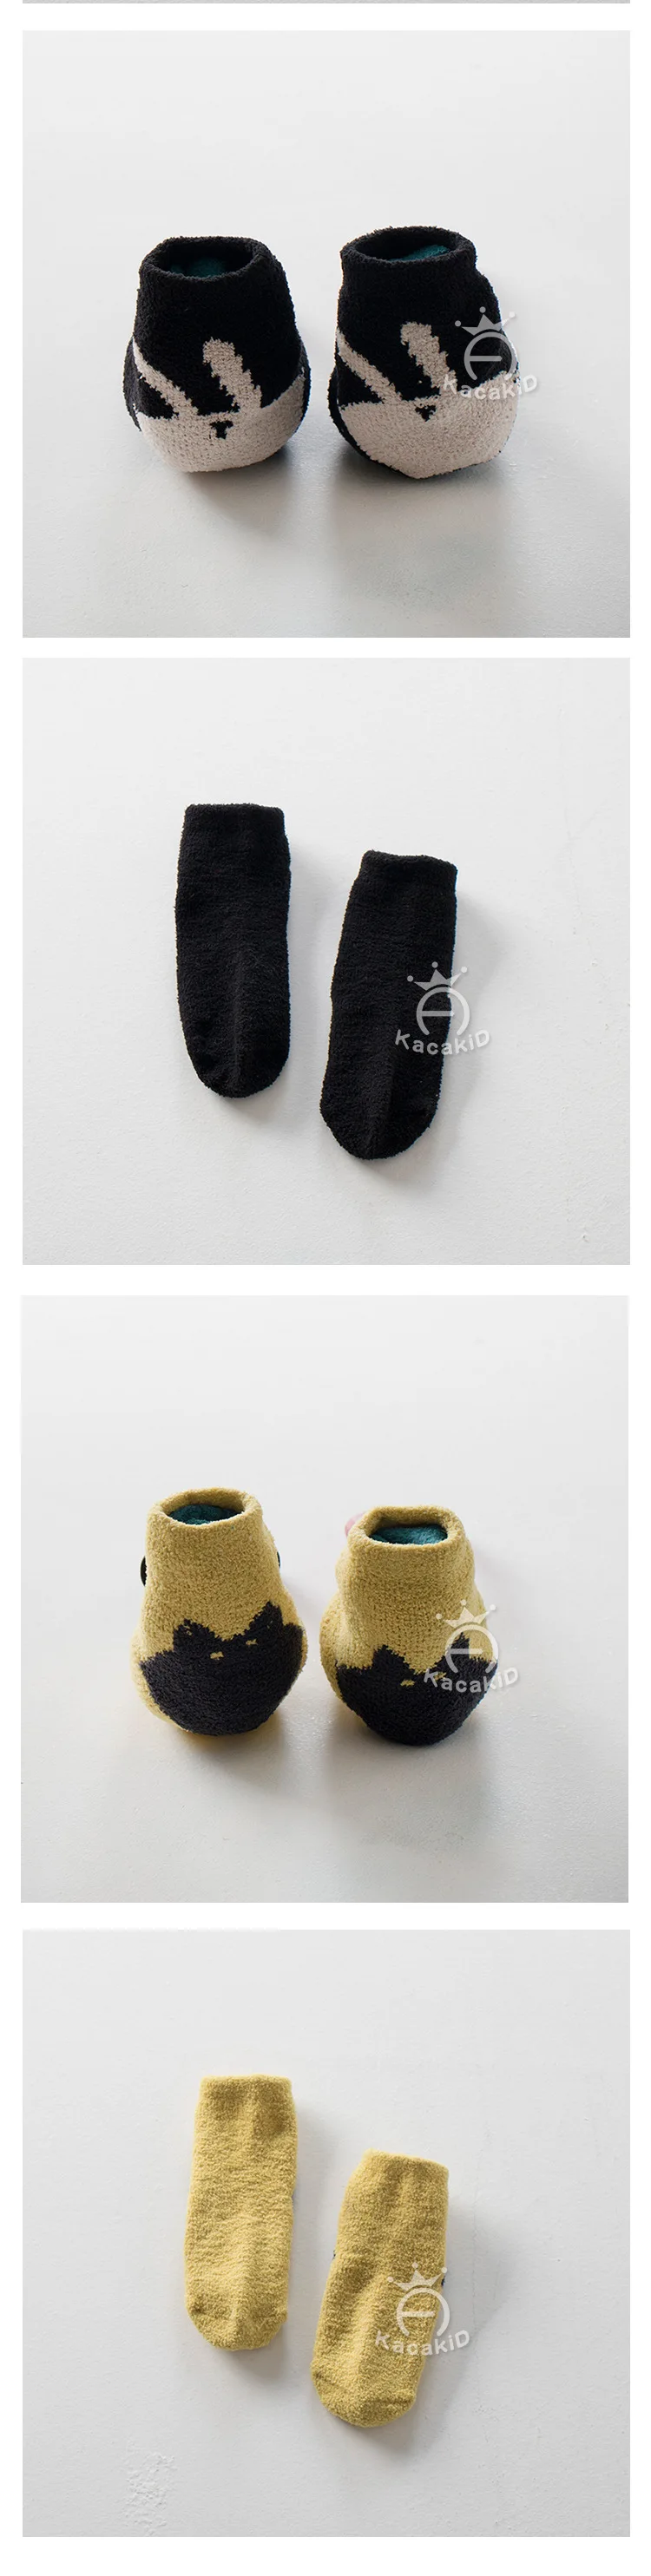 Kacakid для детей новые носки с принтом для детей, толстый зимний, кораллового цвета, бархатный младенческой ребенок сна Носки пол Нескользящие Носки 4 prirs/лот